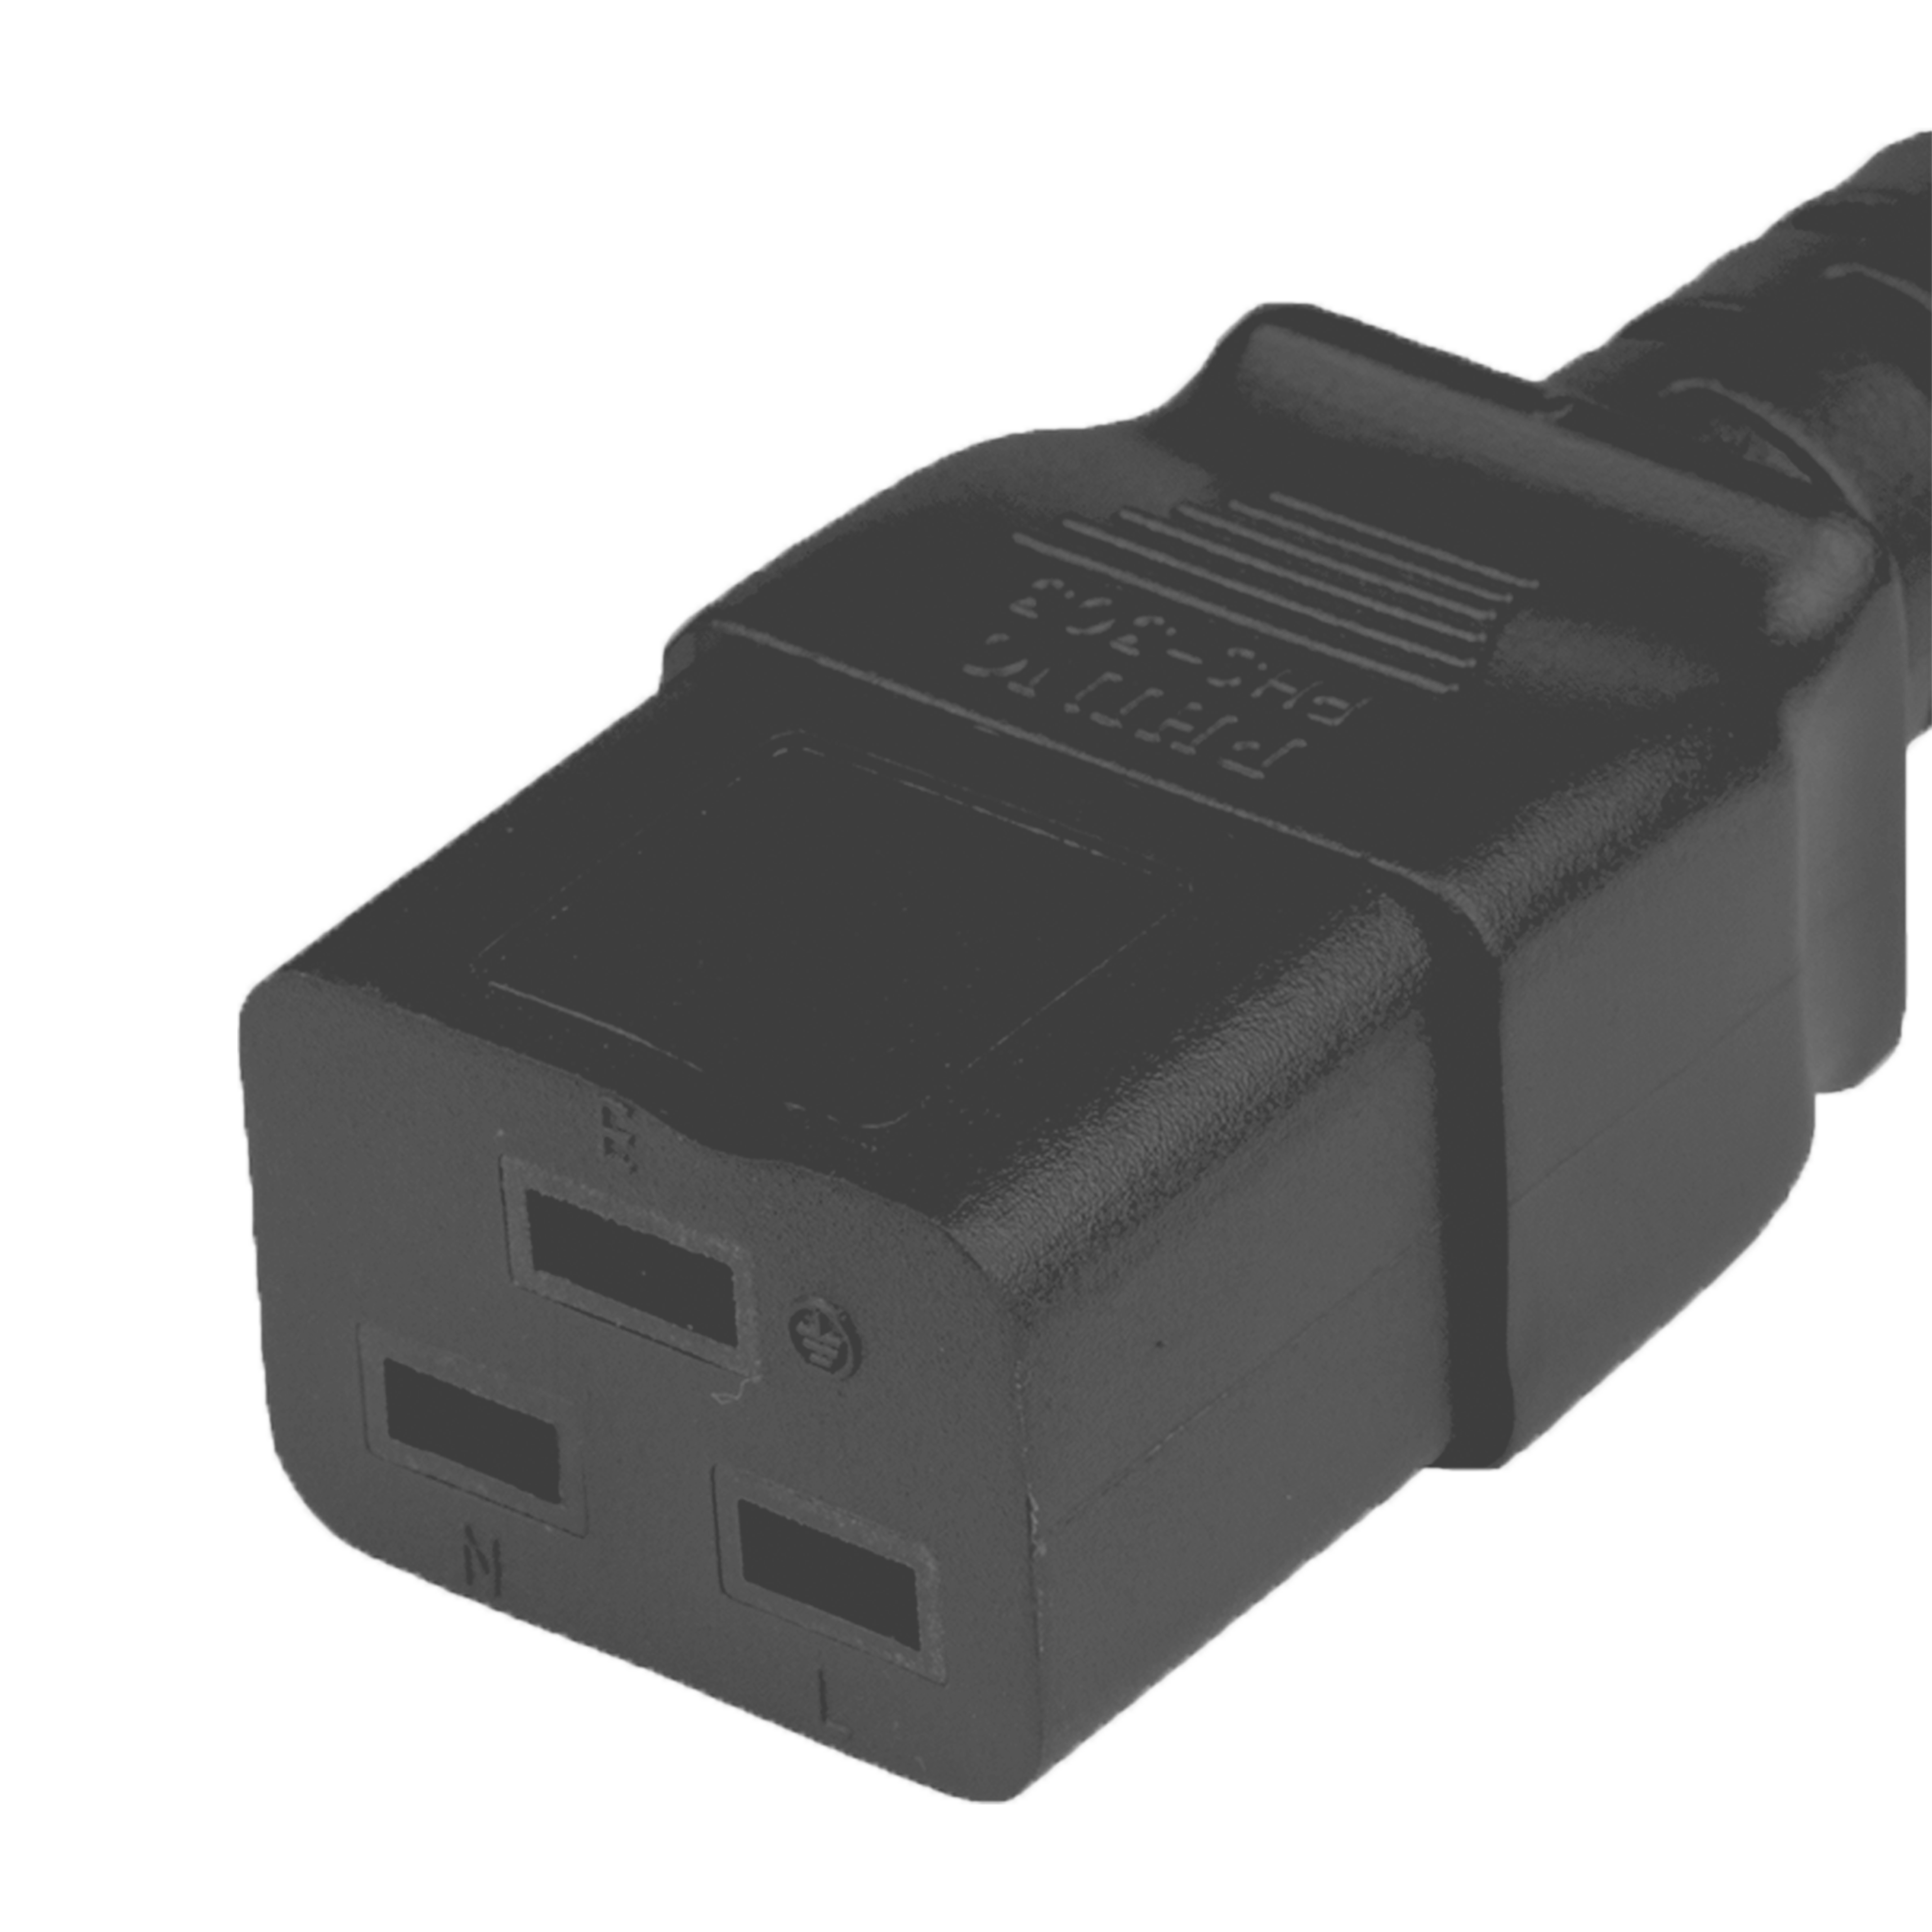 IEC 60320 C19 Connector